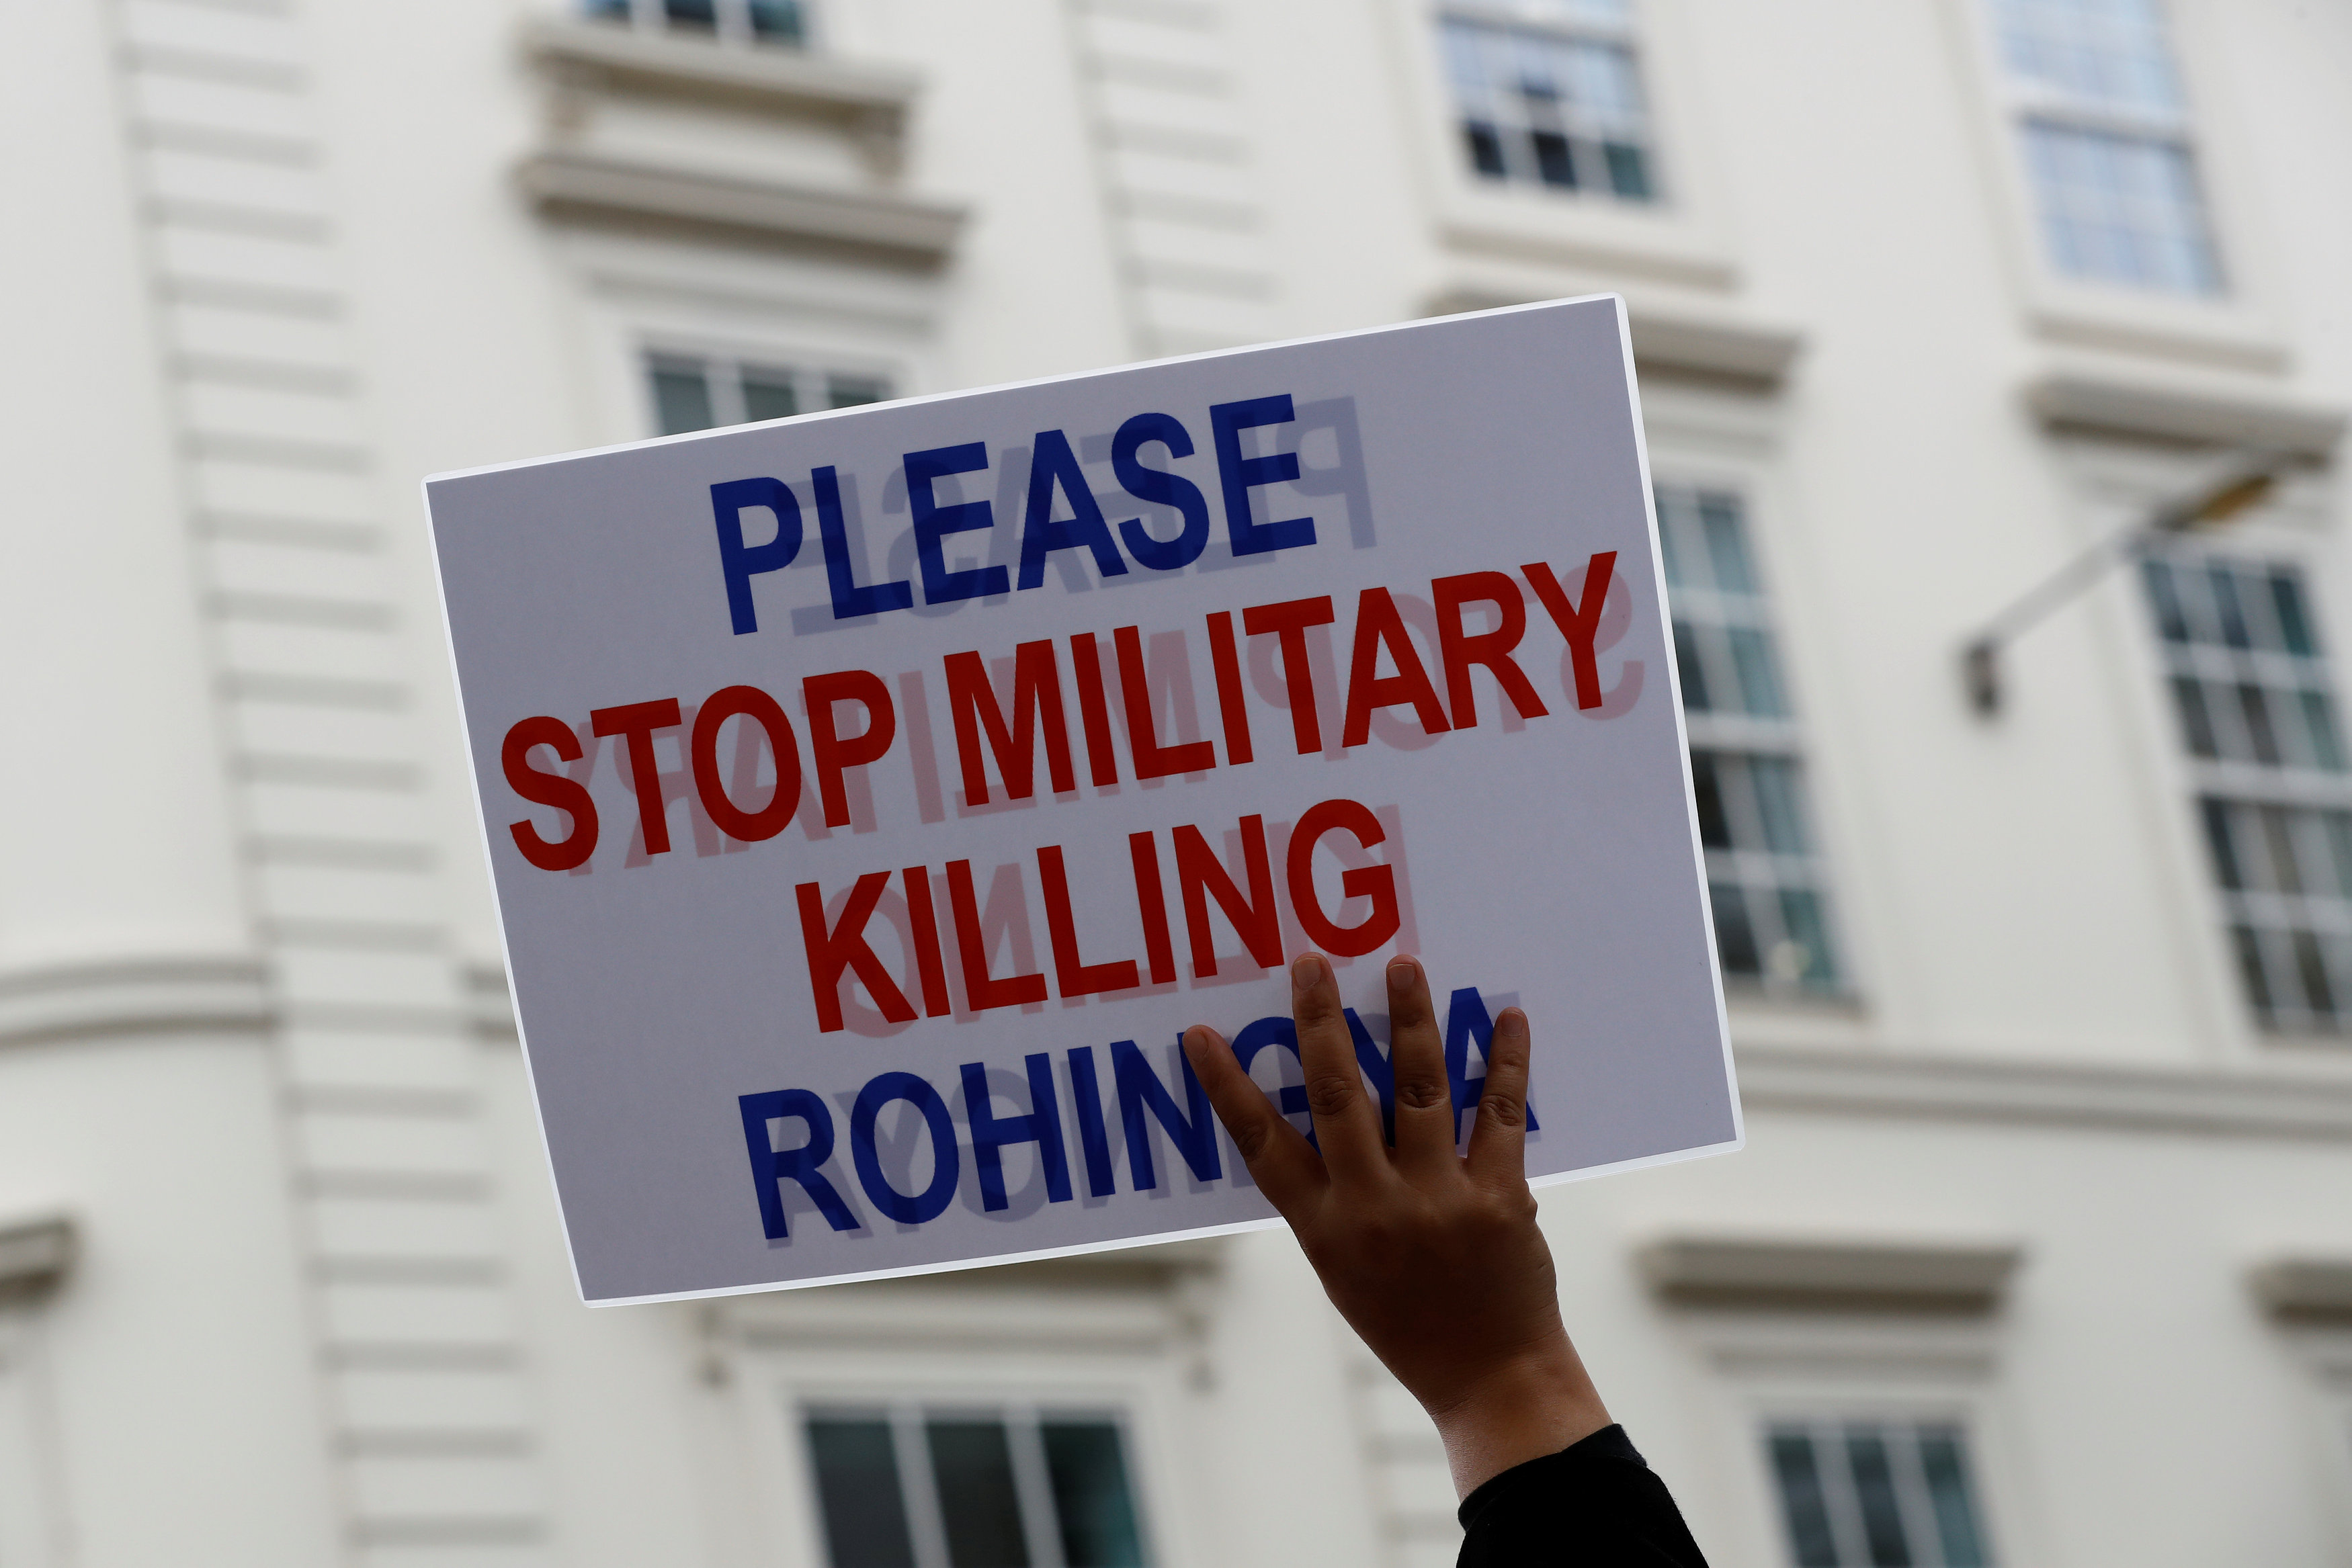 لافتة تطالب بوقف العمليات العسكرية لقتل الروهينجا